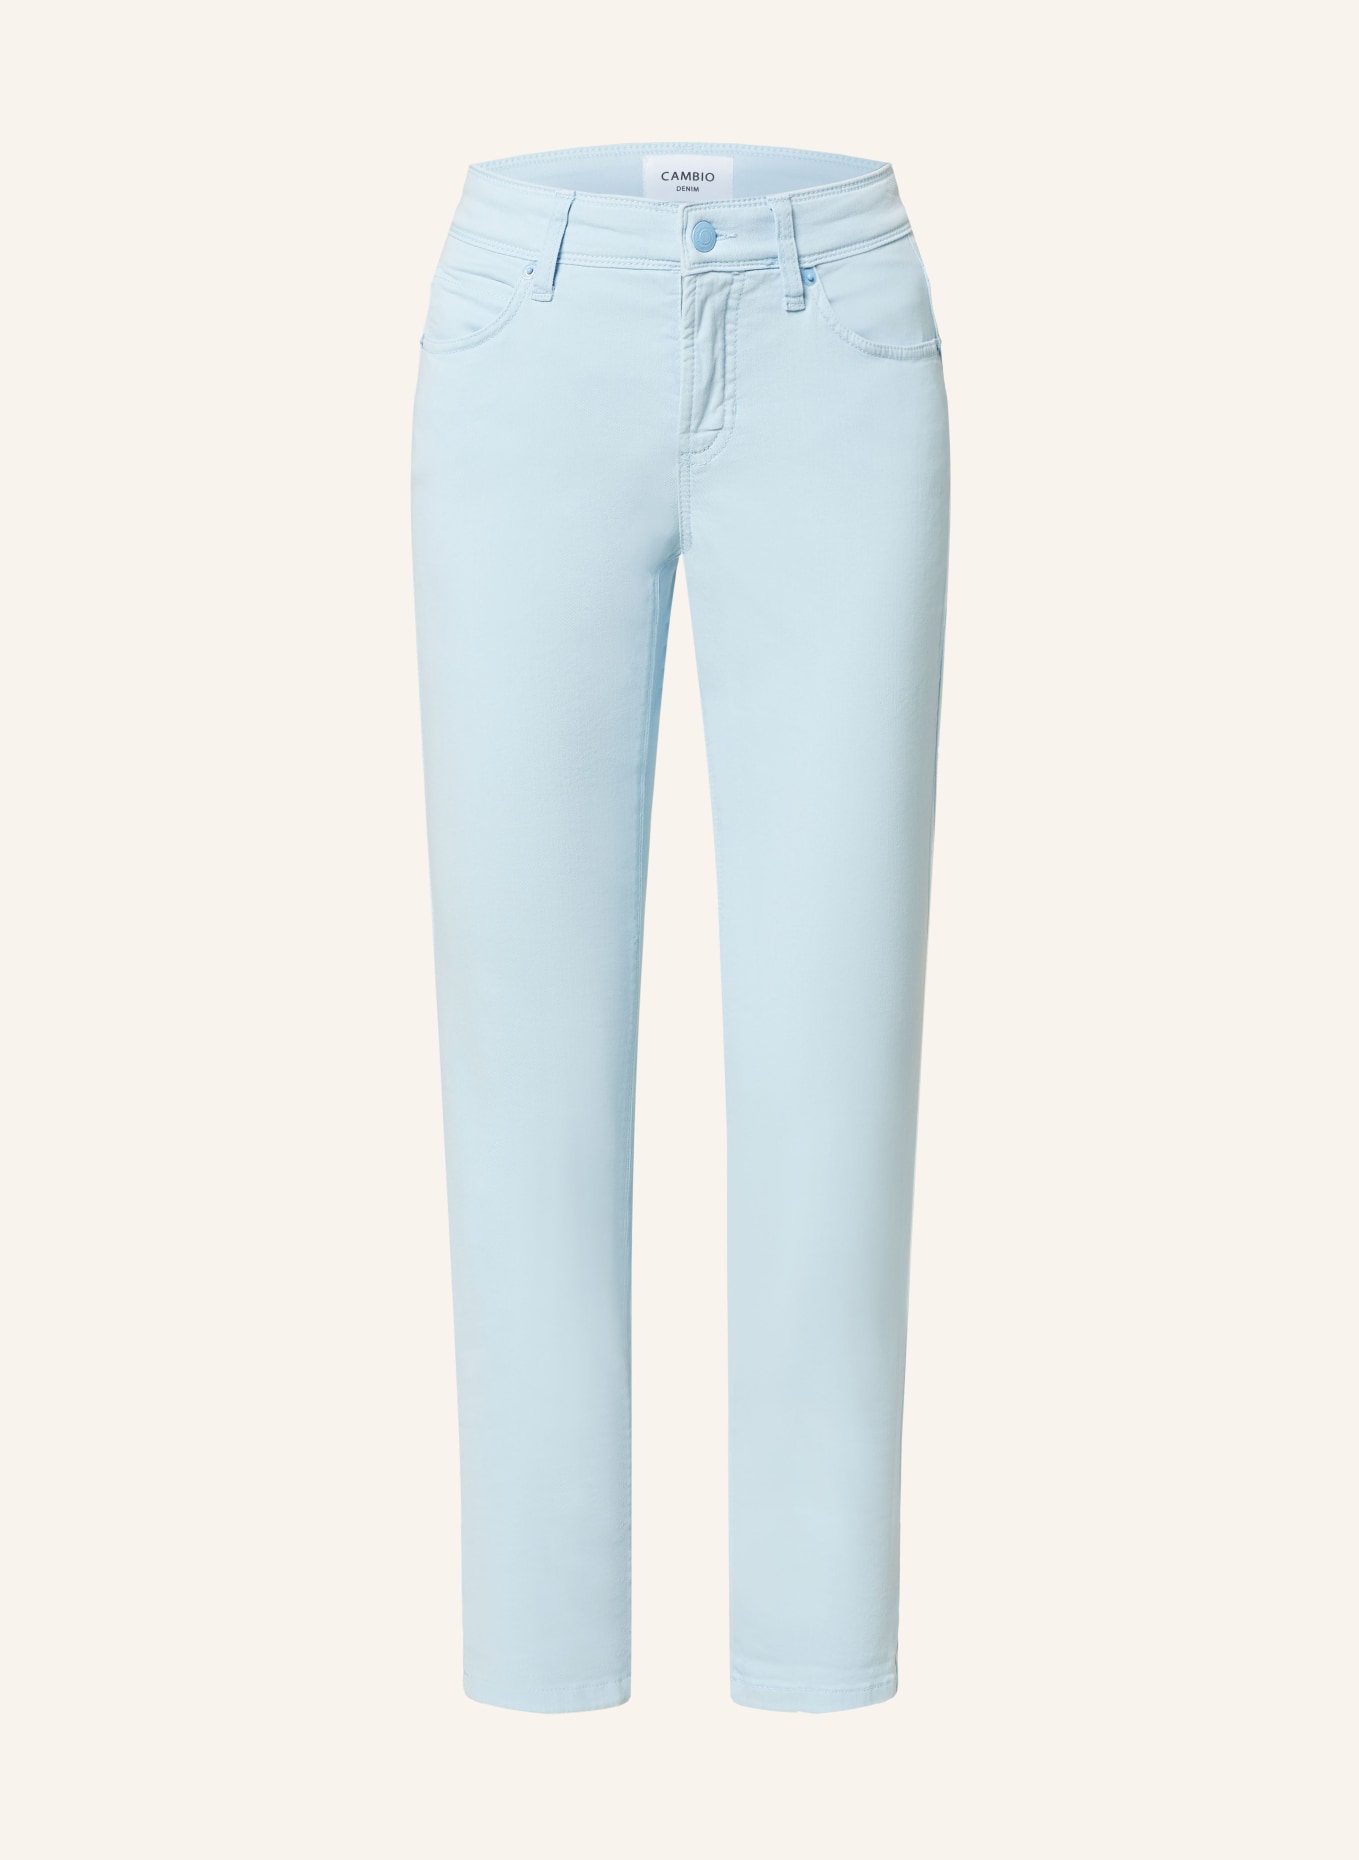 CAMBIO 7/8-Jeans PIPER, Farbe: 408 airy blue (Bild 1)